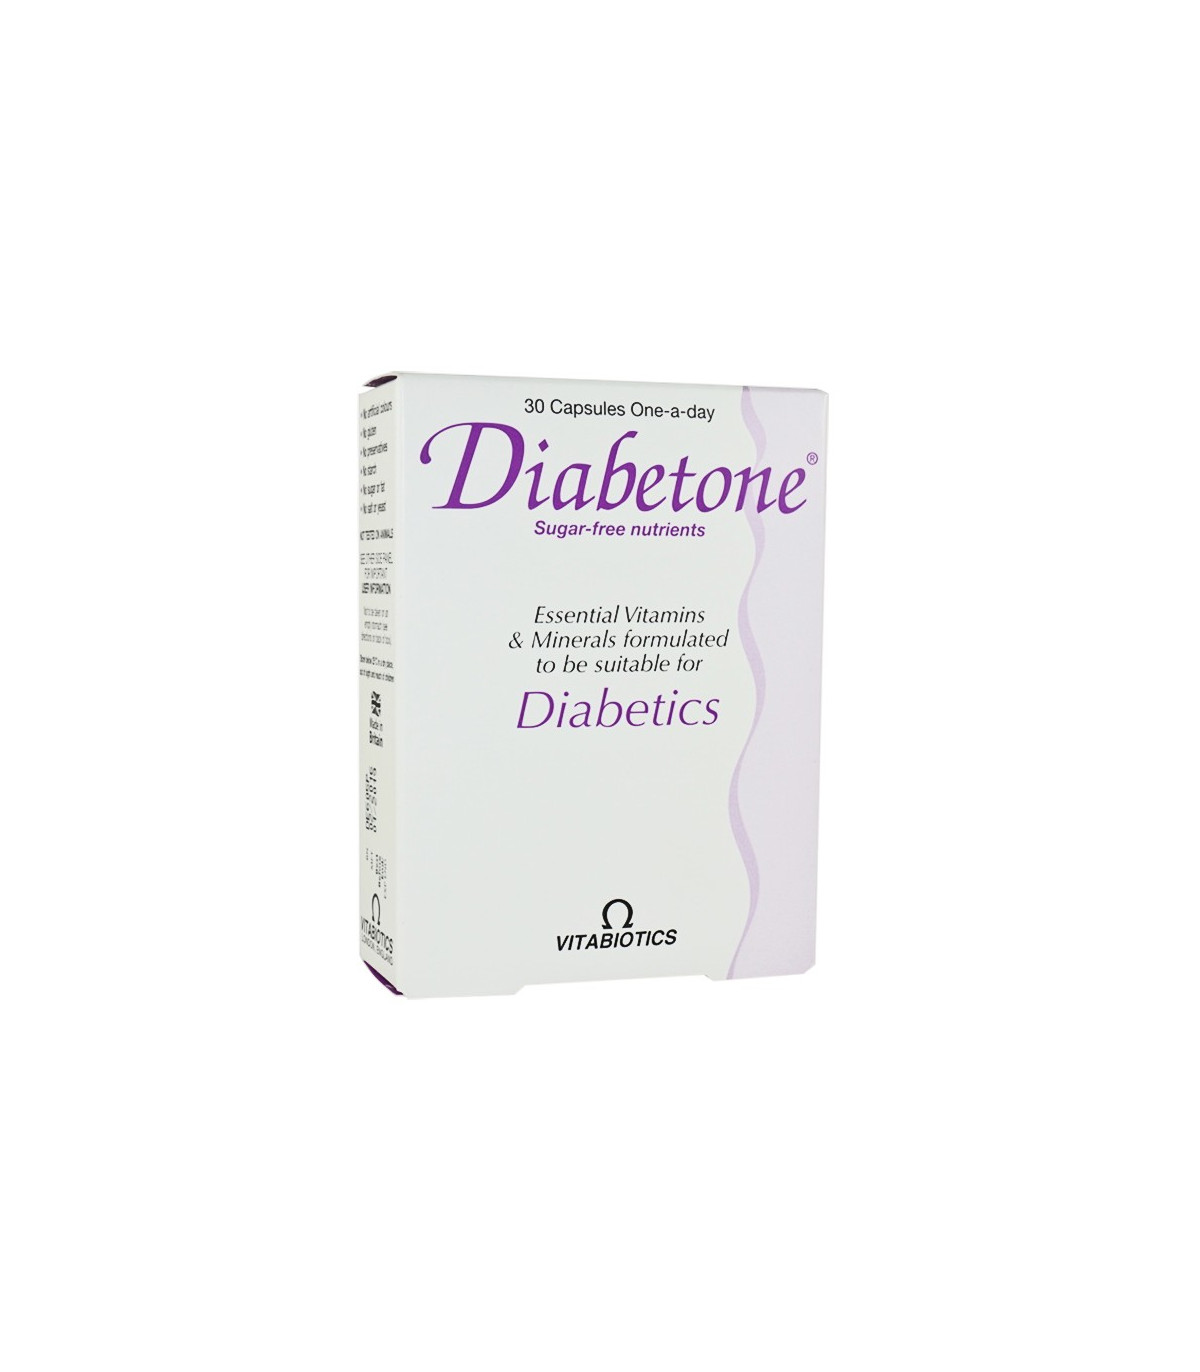 Diabetone - 30 Capsules